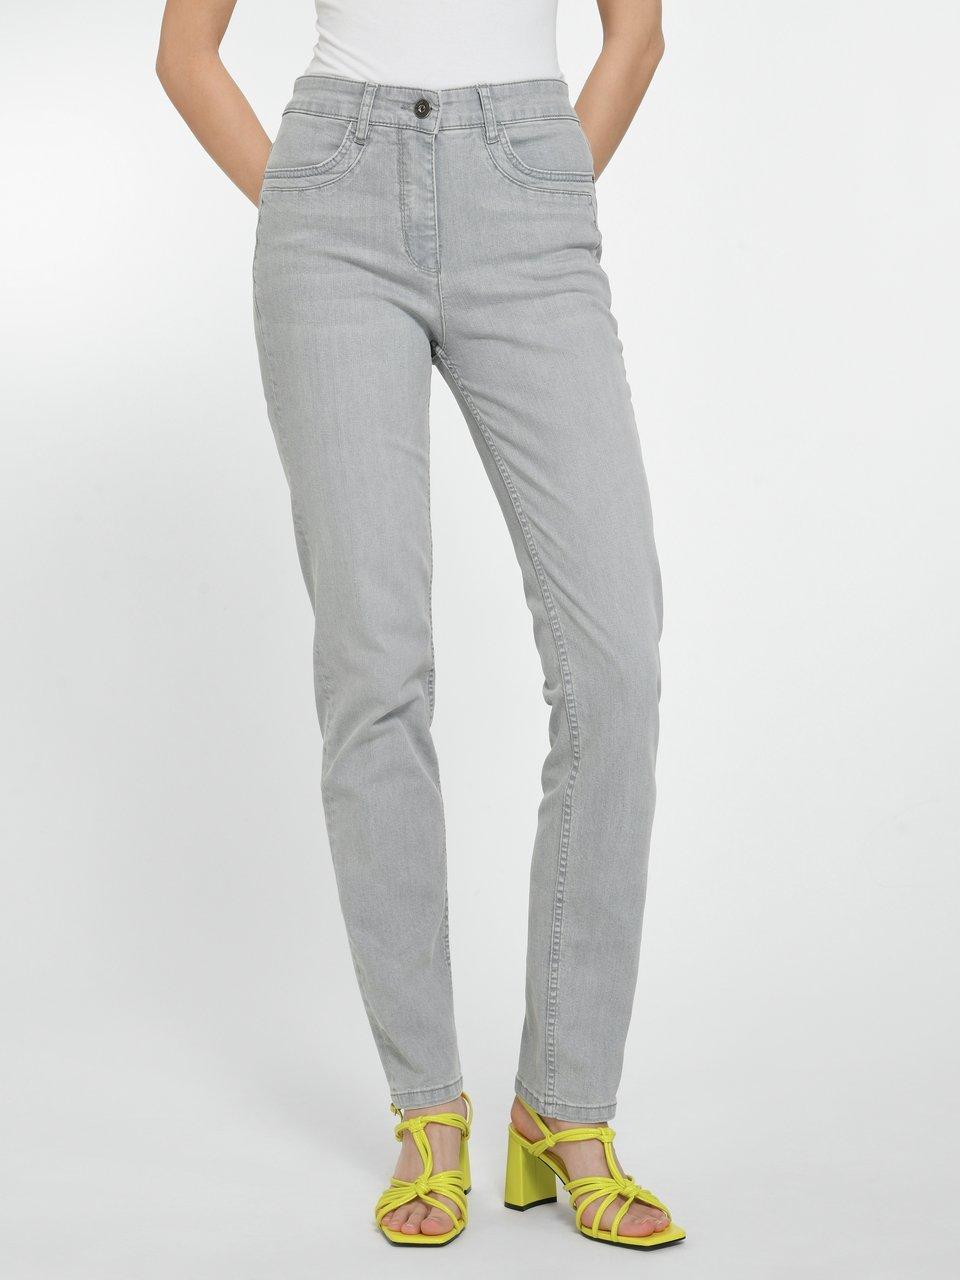 Graue Damen Jeans im Hahn Peter Online-Shop kaufen